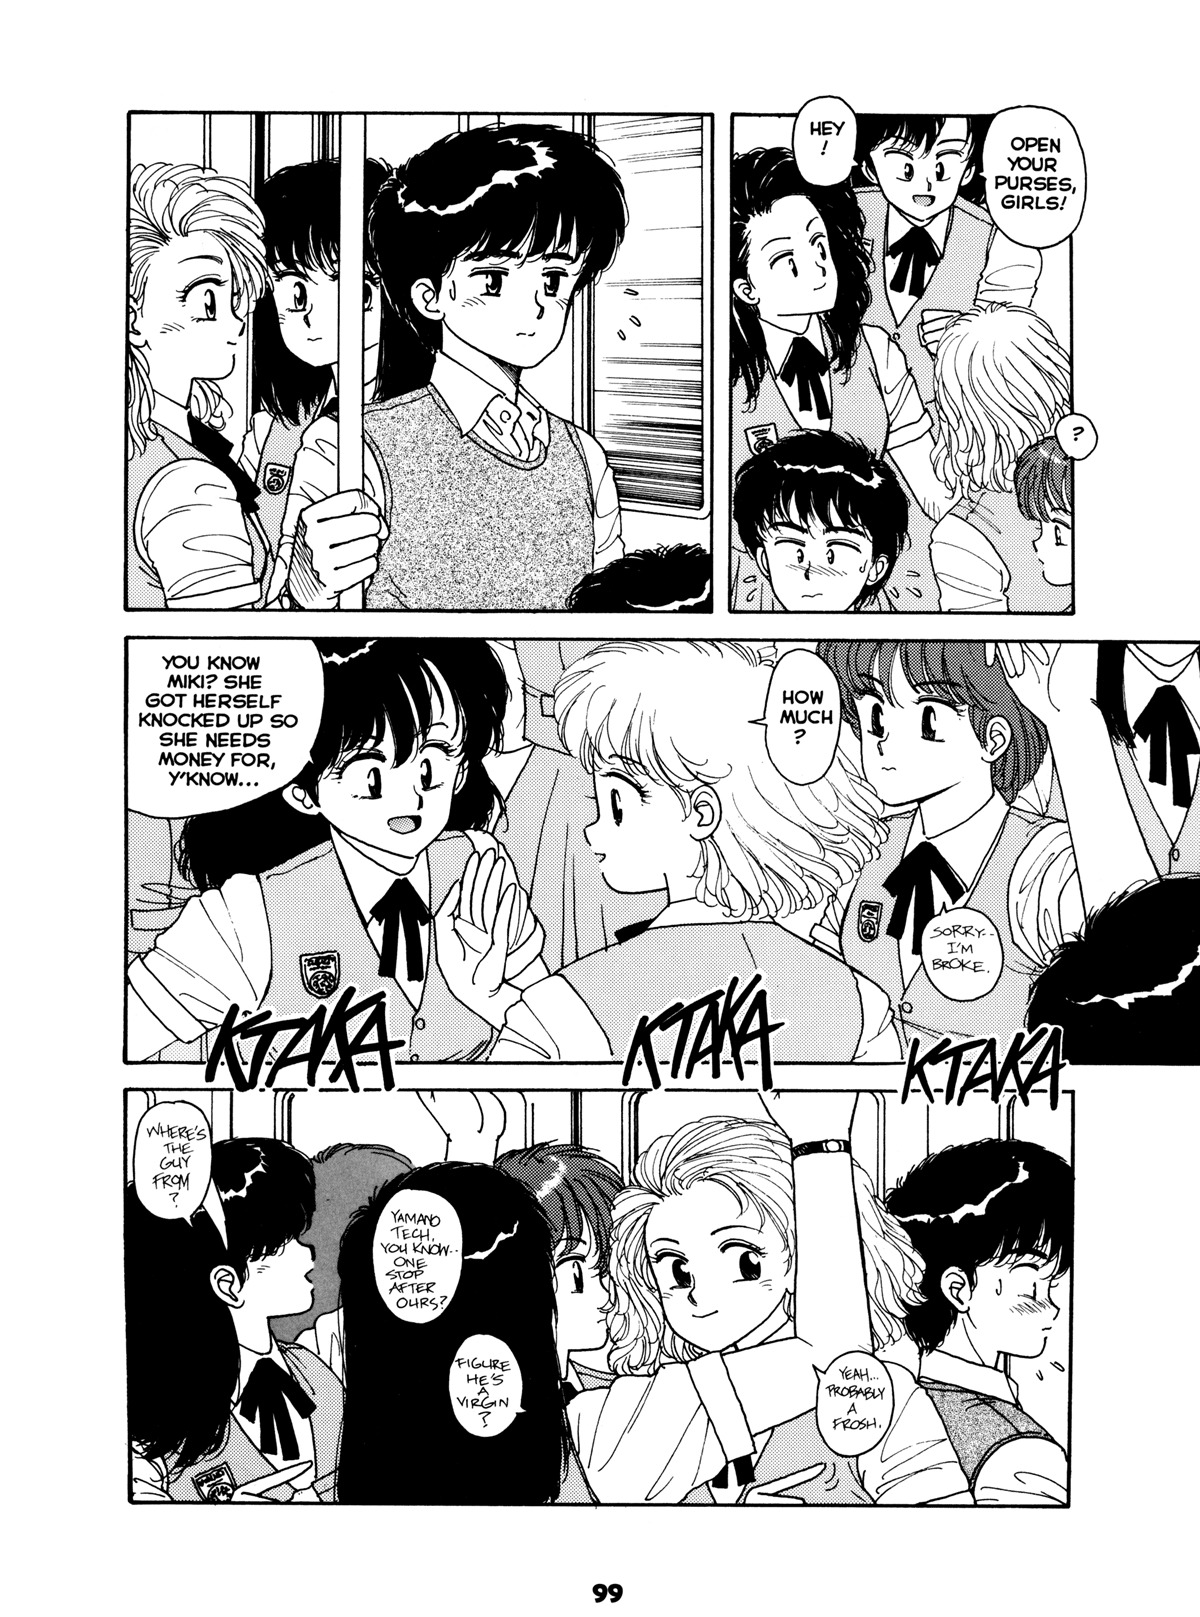 Misty Girl Extreme 98 hentai manga